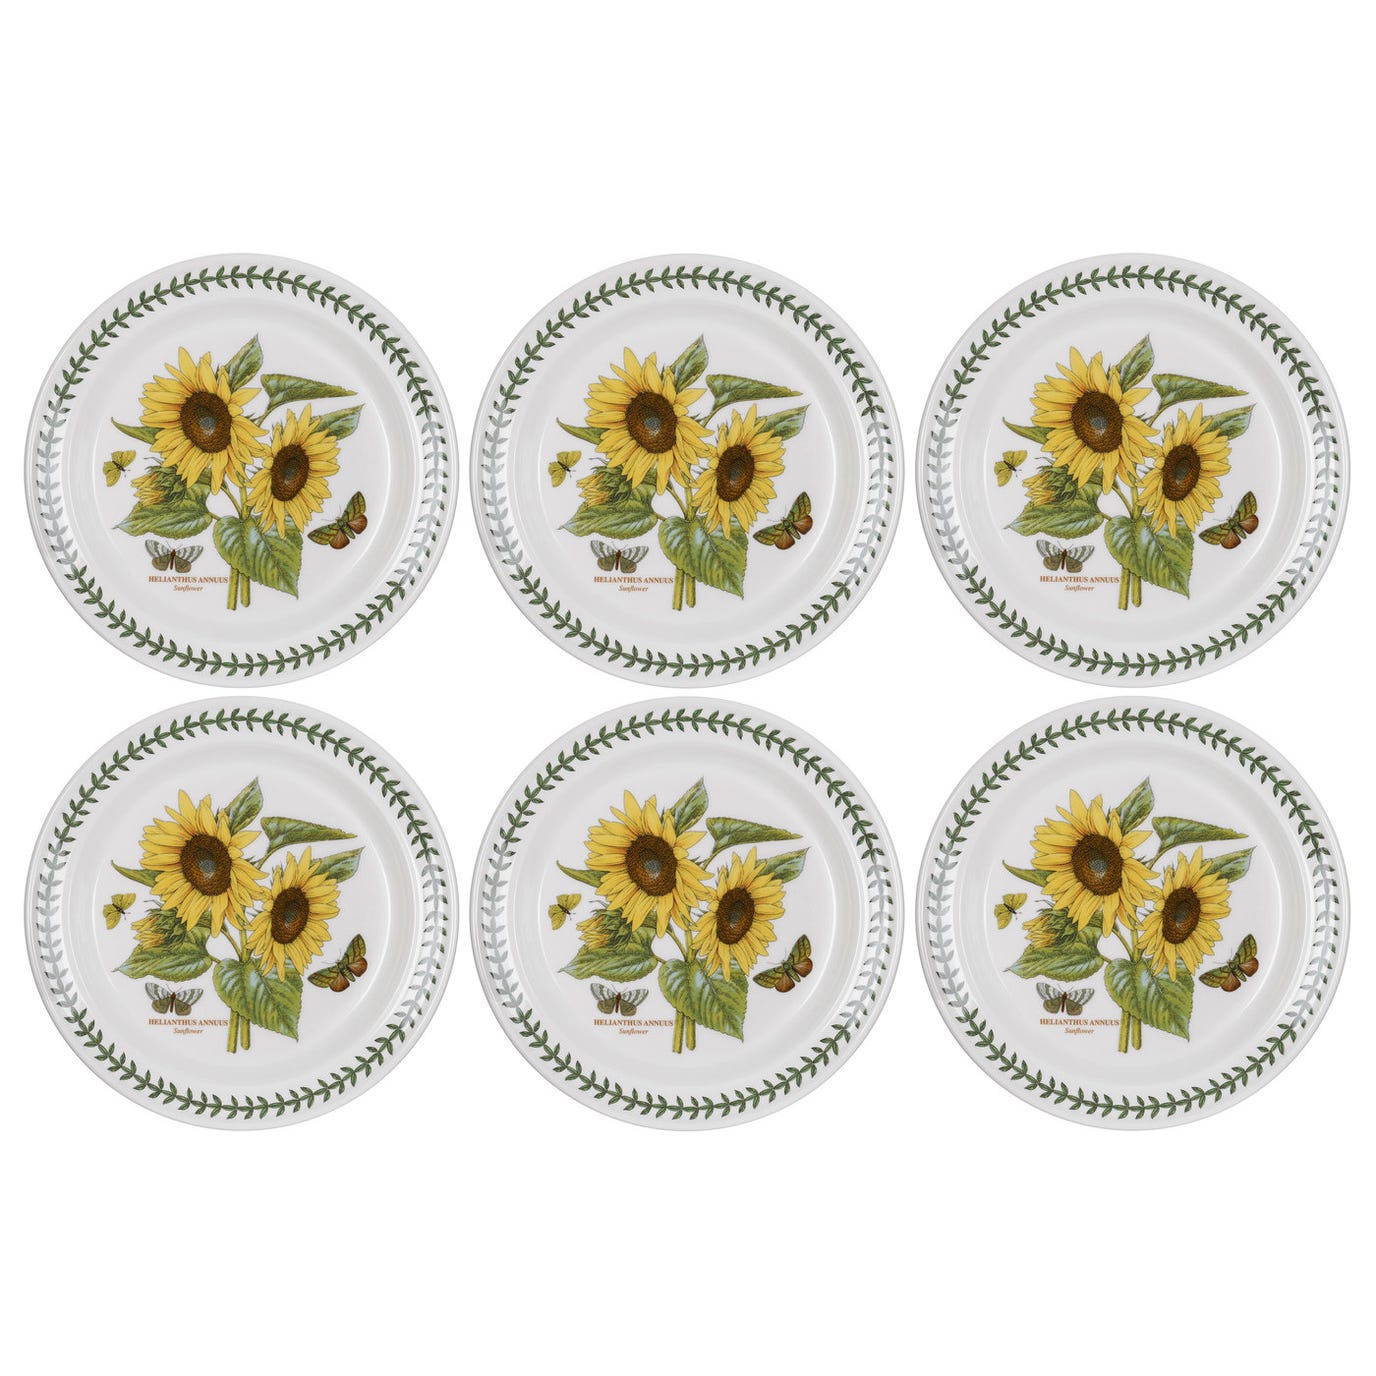 Portmeirion Botanic Garden10 inch Plate Sunflower Set of 6